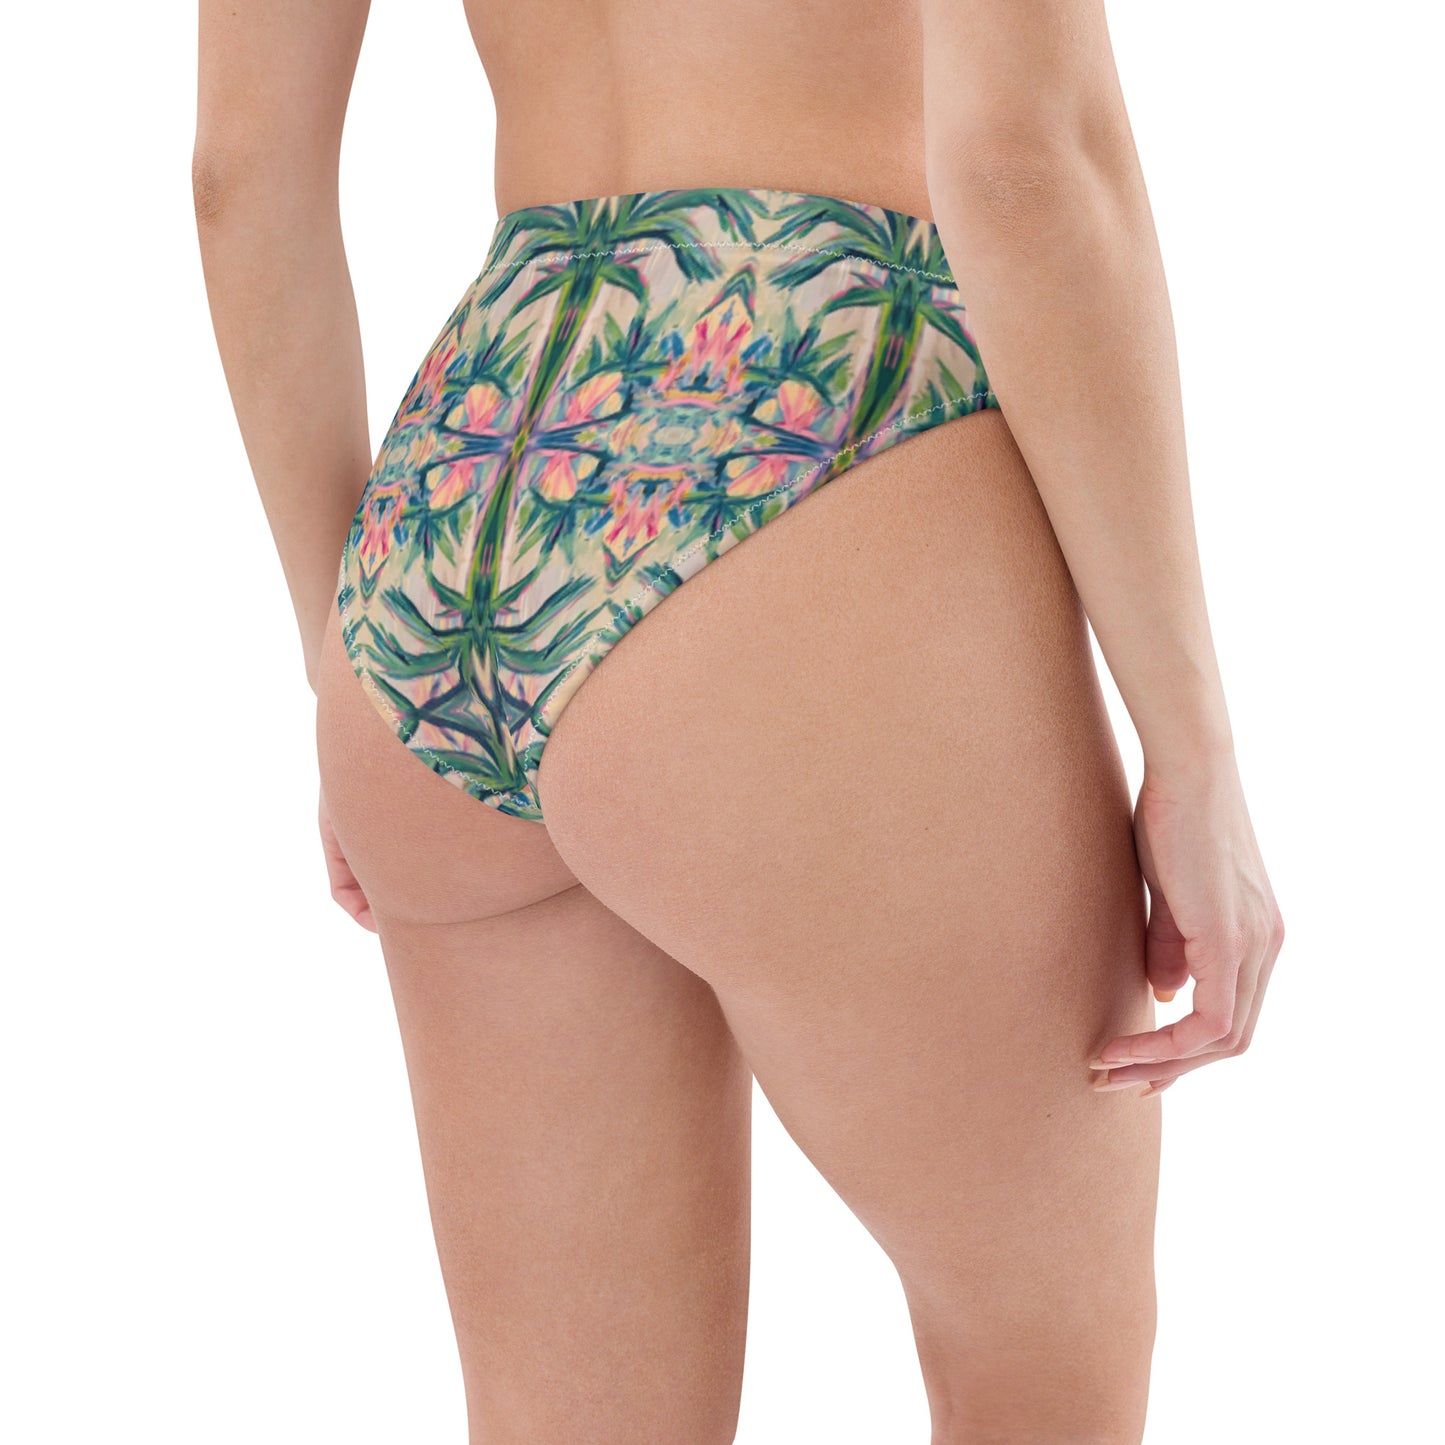 Tiki Time Recycled high-waisted bikini bottom